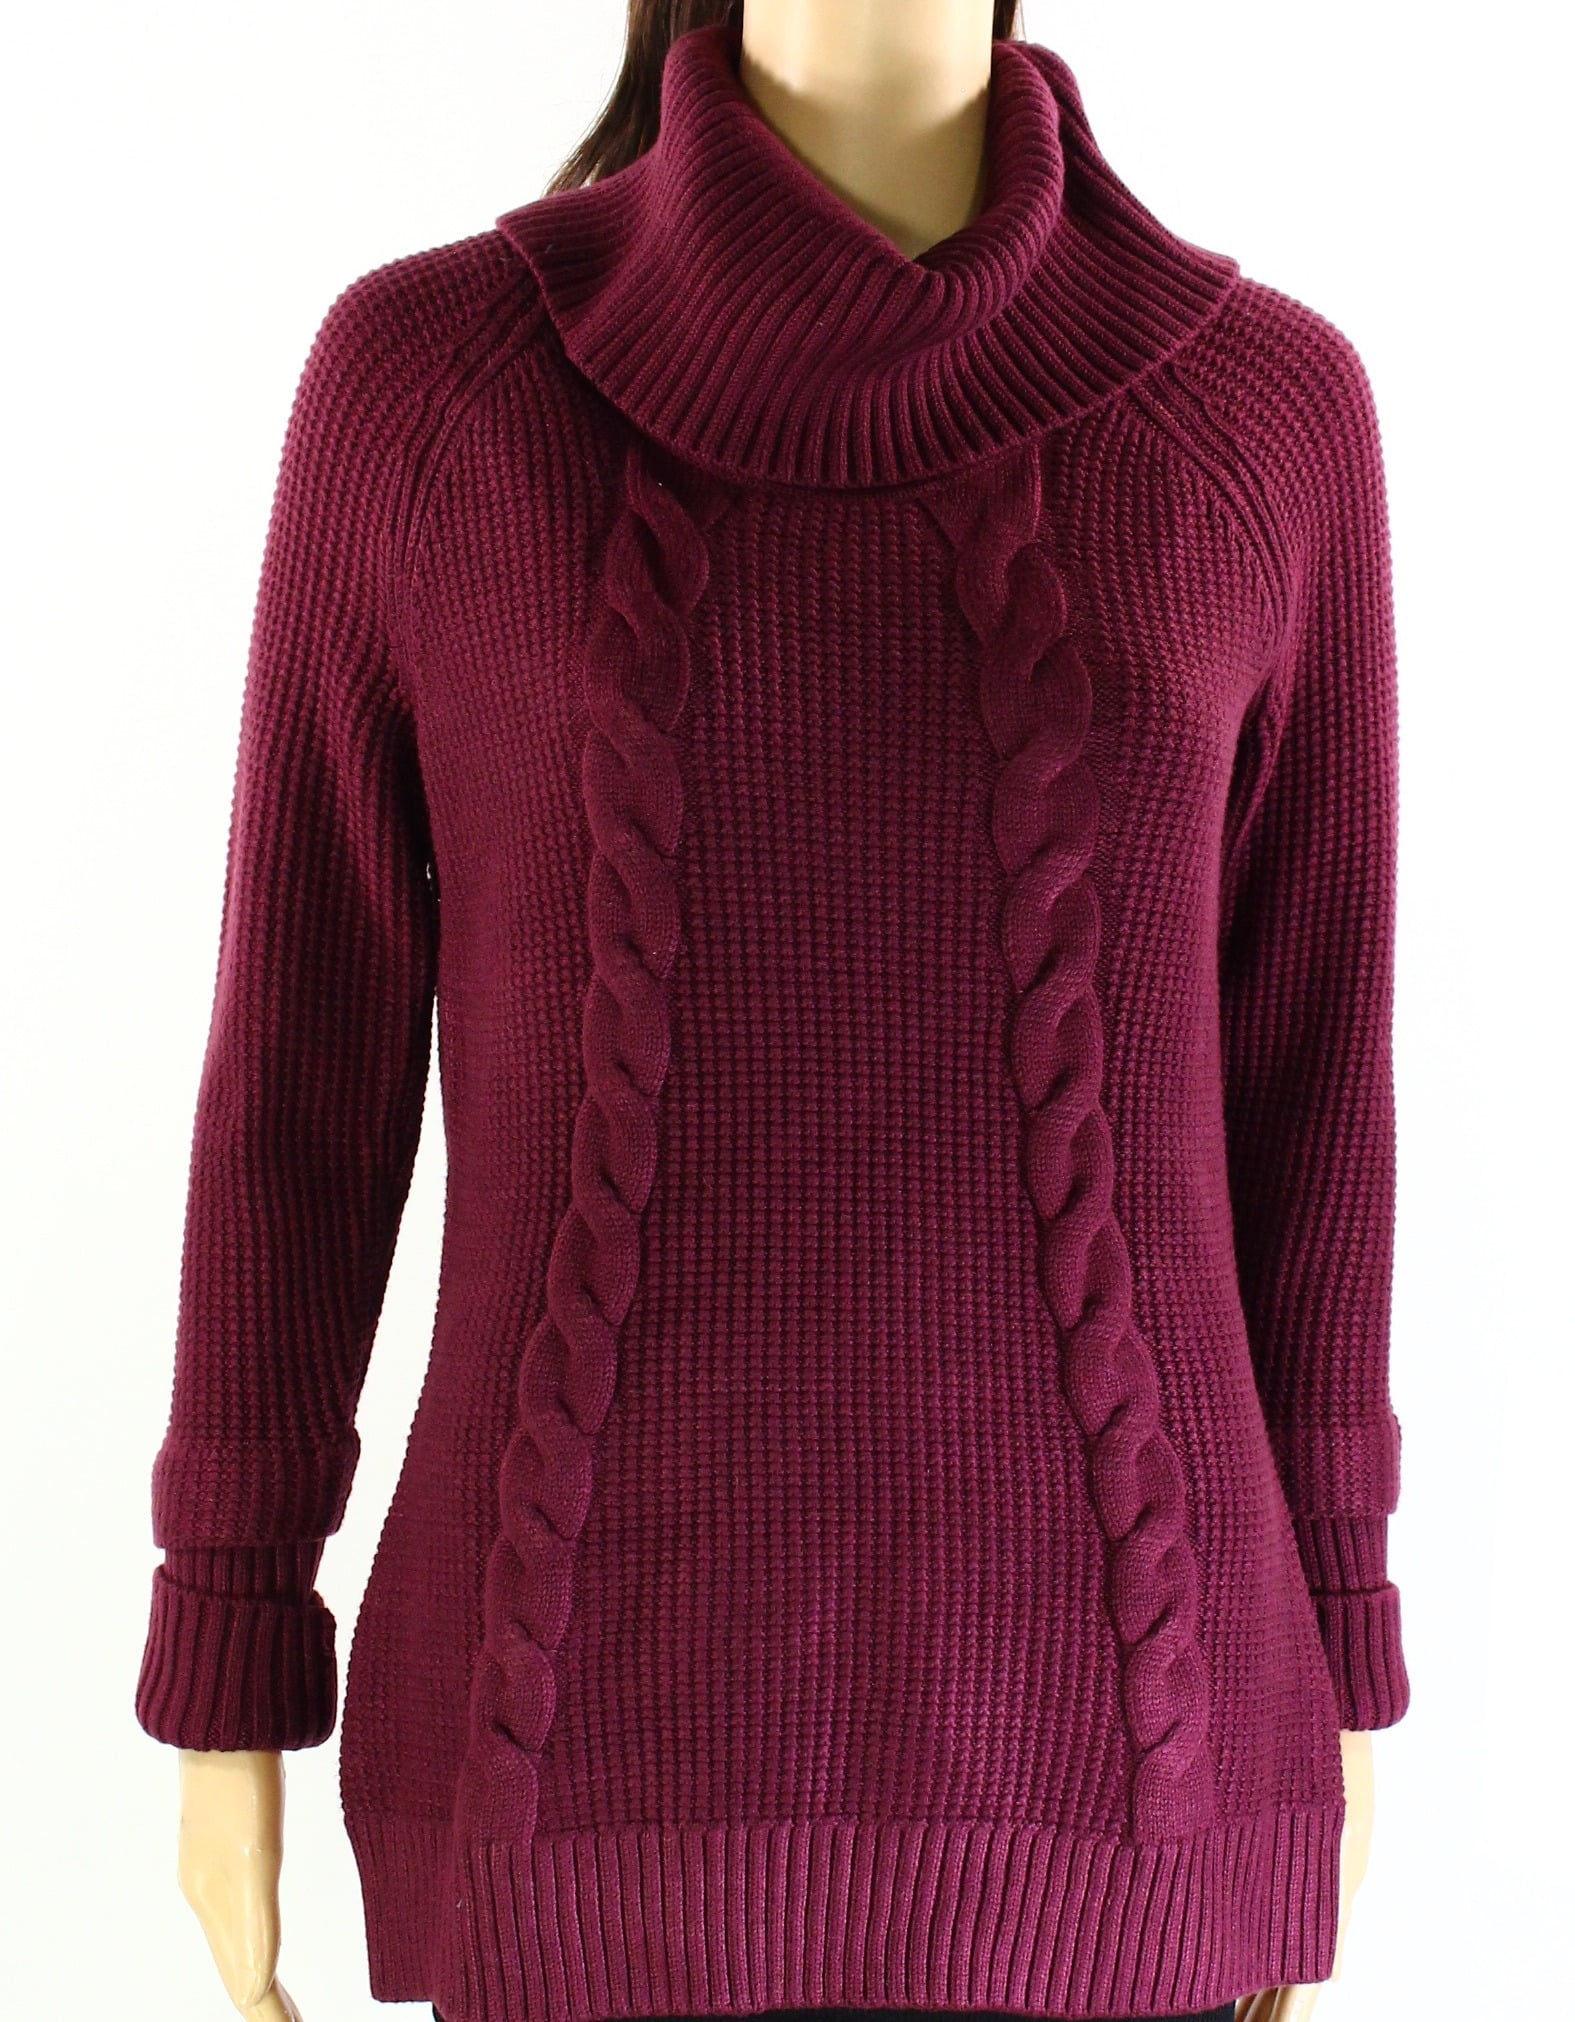 Purple Loose Sweater Pullover Women Plus Size Knit Sweaters Fluffy Knitwear Kadin Mont Jumper 